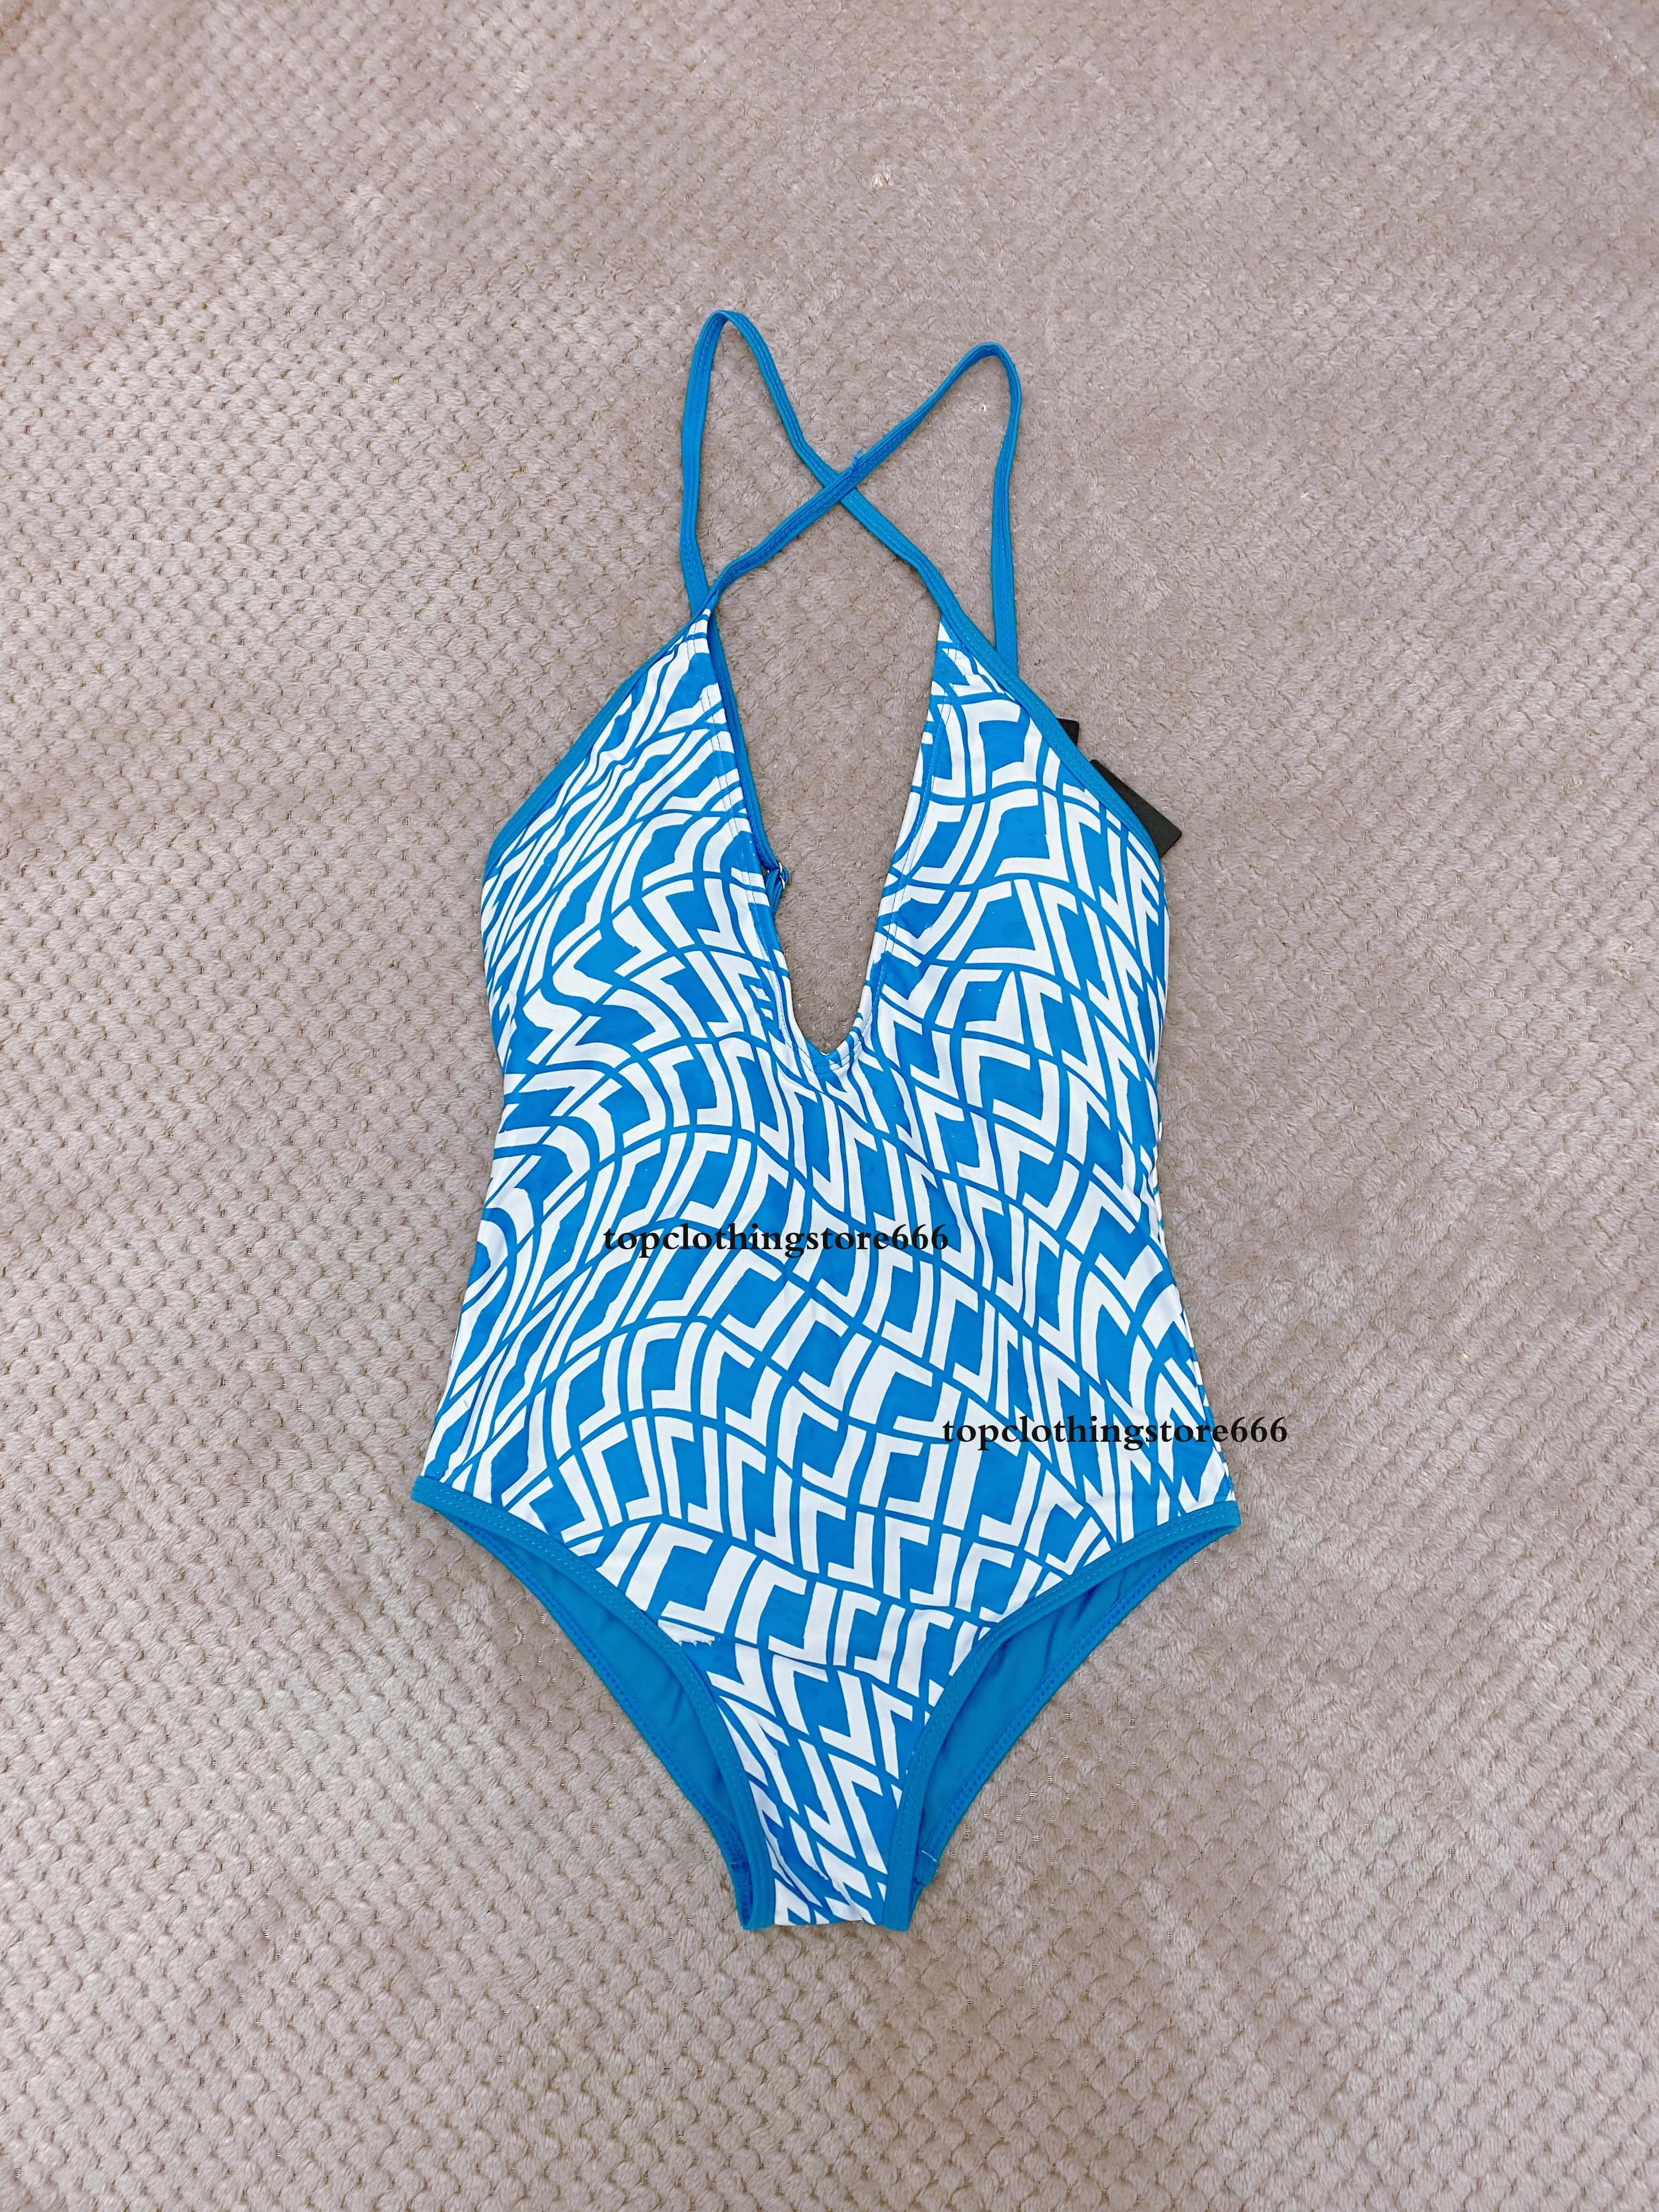 Tasarımcı Fe Summer Moda Üstü Seksi Strap Plaj Bikini Kadın Mayolar Set Plaj Banyosu İki Parçalı Set Rüzgar Yüzme Yüksek Kaliteli Kadın Klasik Mayo